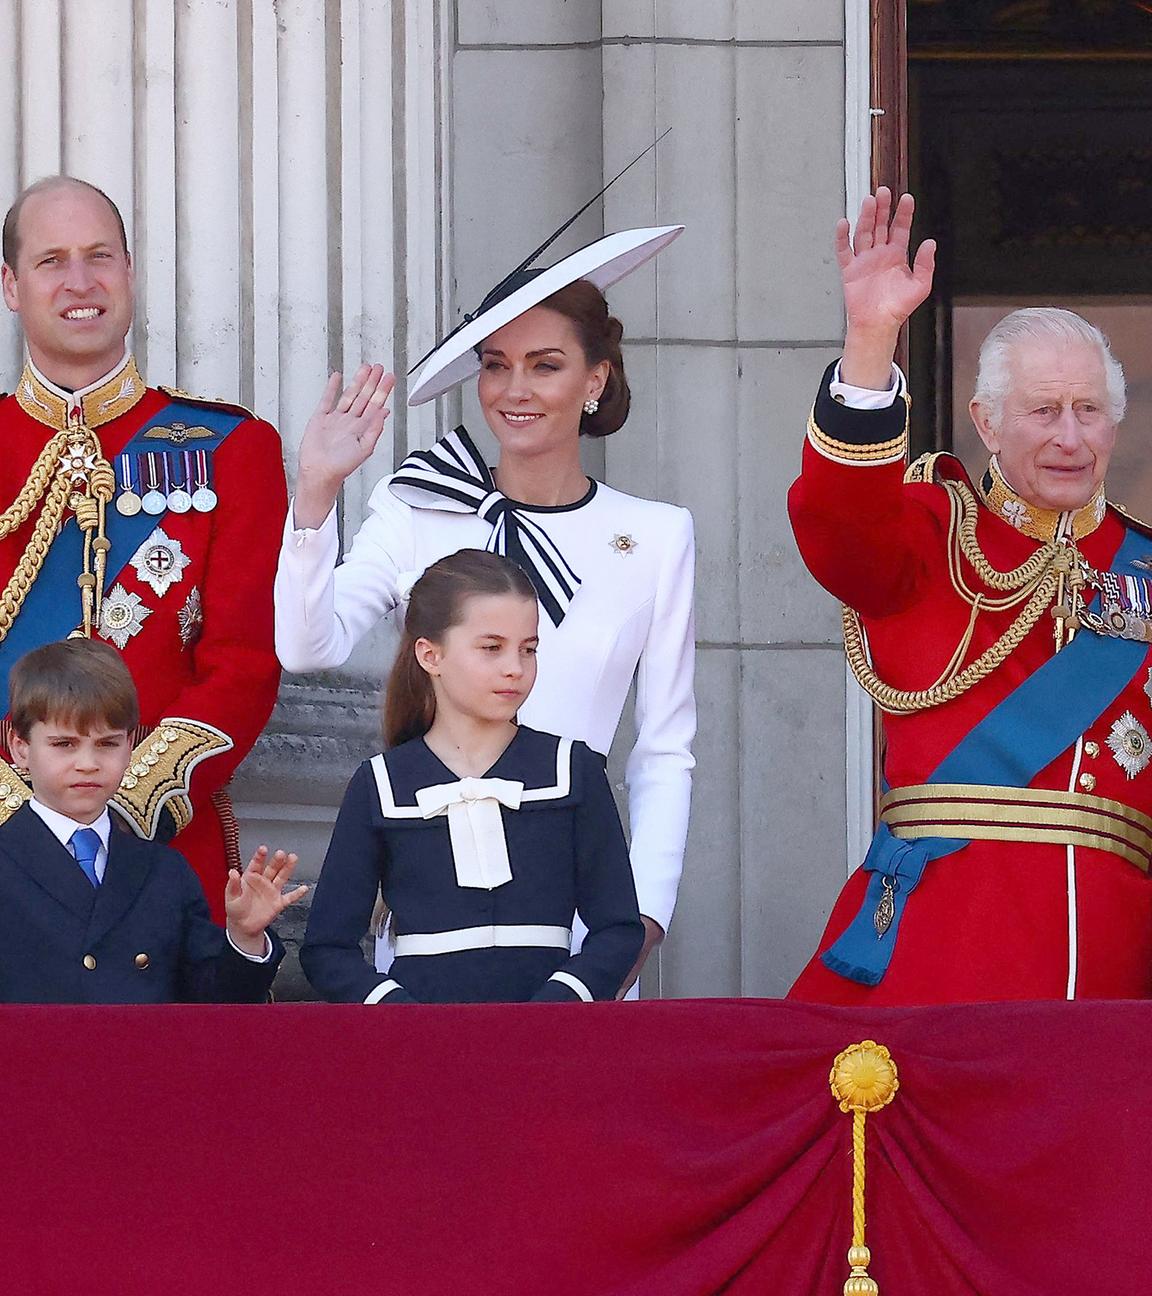 Die königliche Familie Großbritanniens auf dem Balkon des Buckingham Palastes